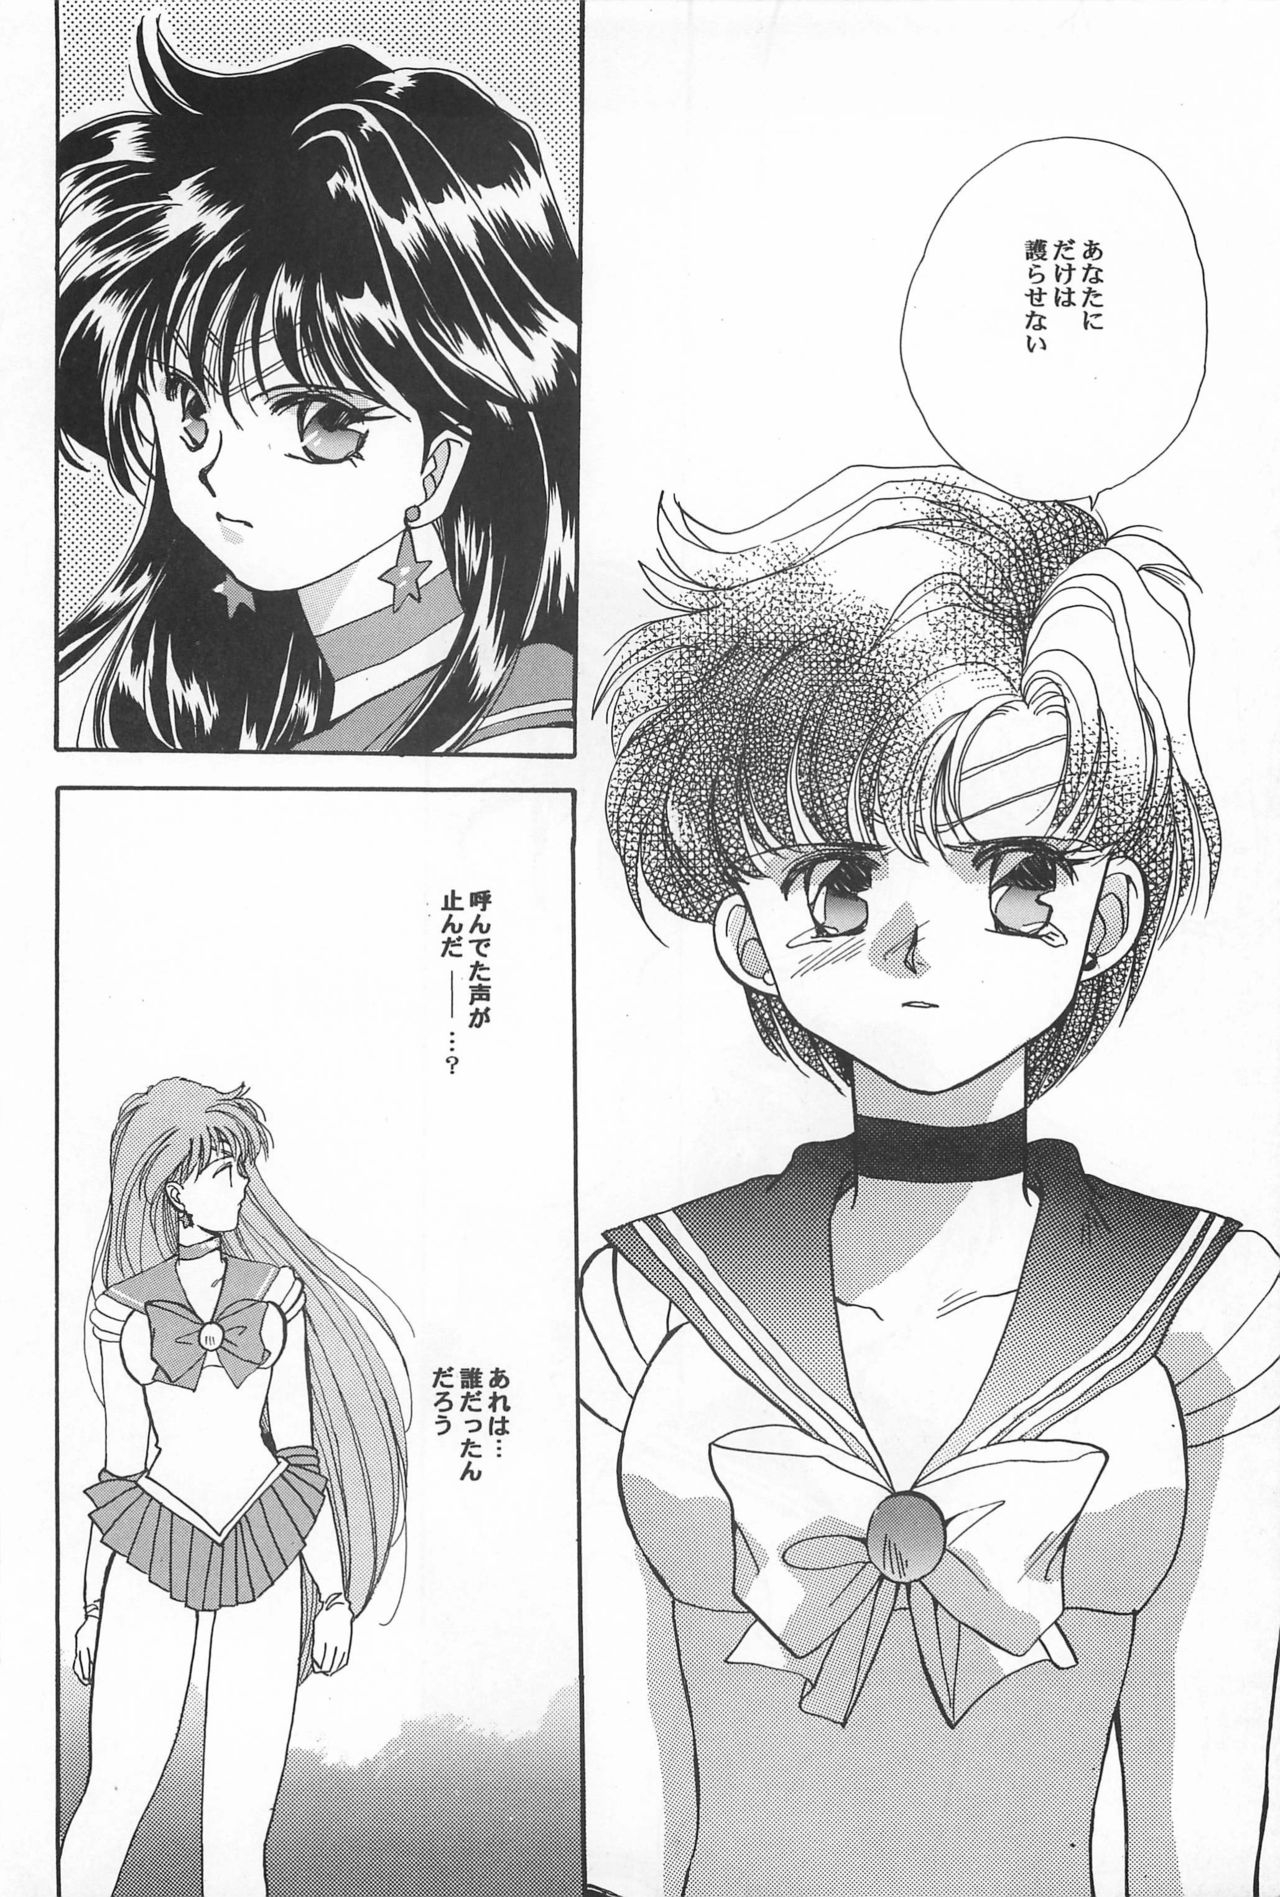 [Hello World (Muttri Moony)] Kaze no You ni Yume no You ni - Sailor Moon Collection (Sailor Moon) 145